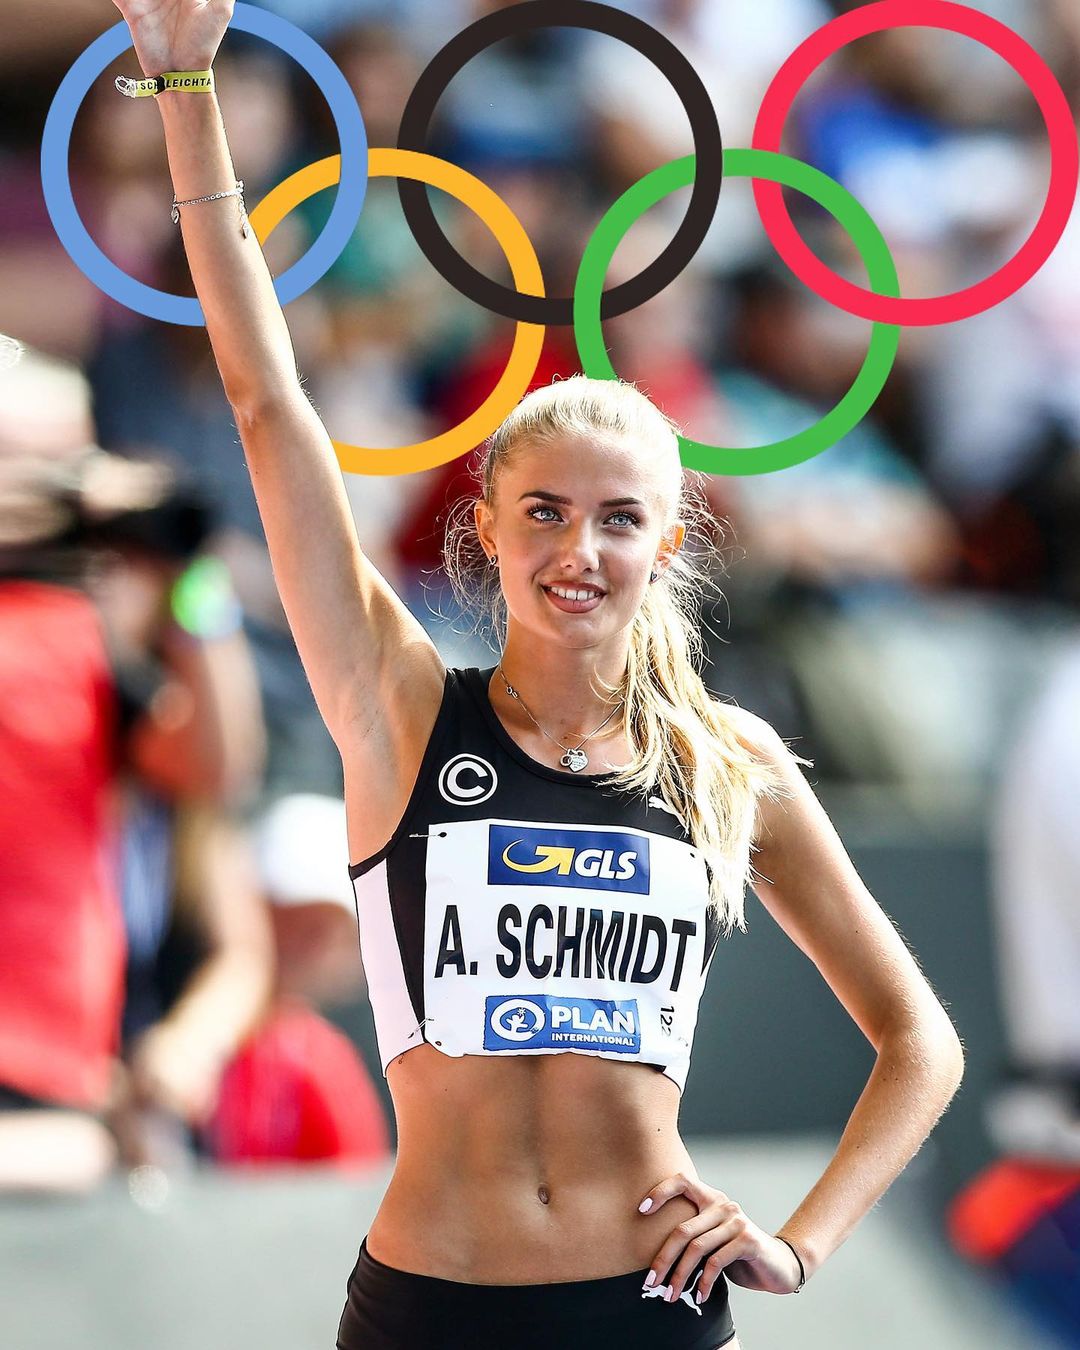 Alica Schmidt, a atleta mais sexy do mundo que não troca uma medalha por posar nua